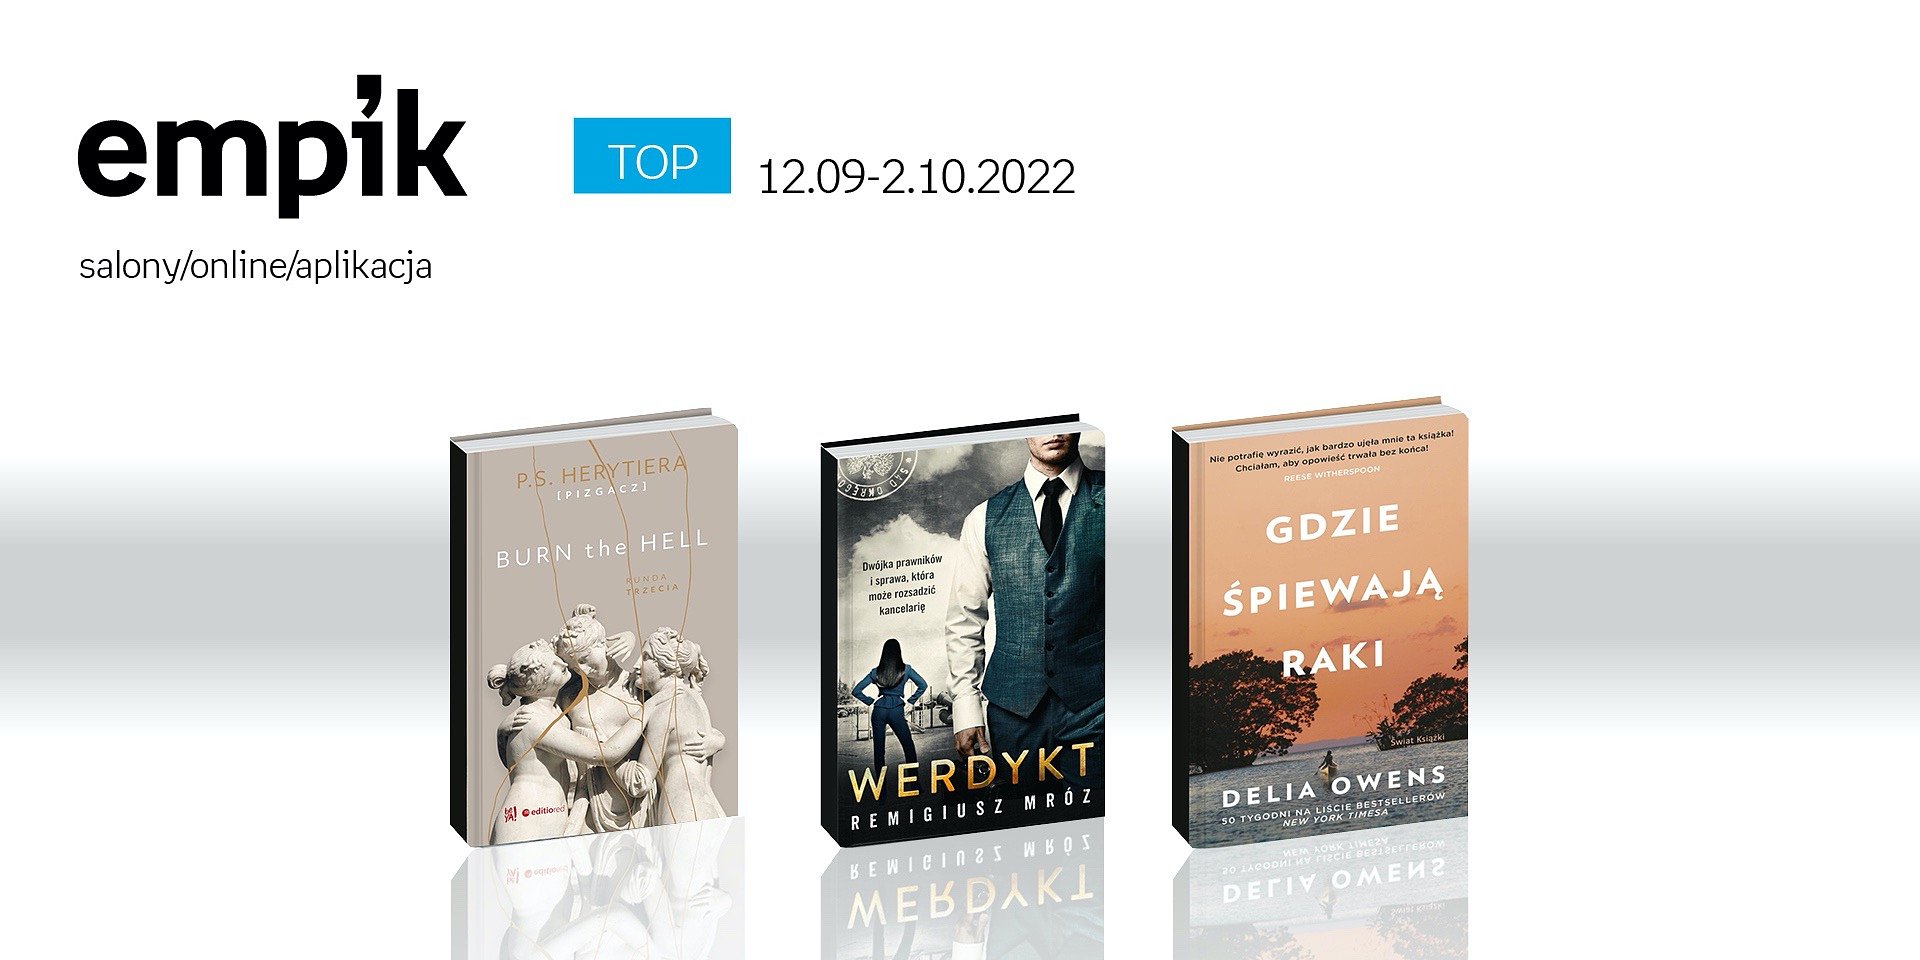 Książkowe listy bestsellerów w Empiku za okres od 12 września do 2 października 2022 r.